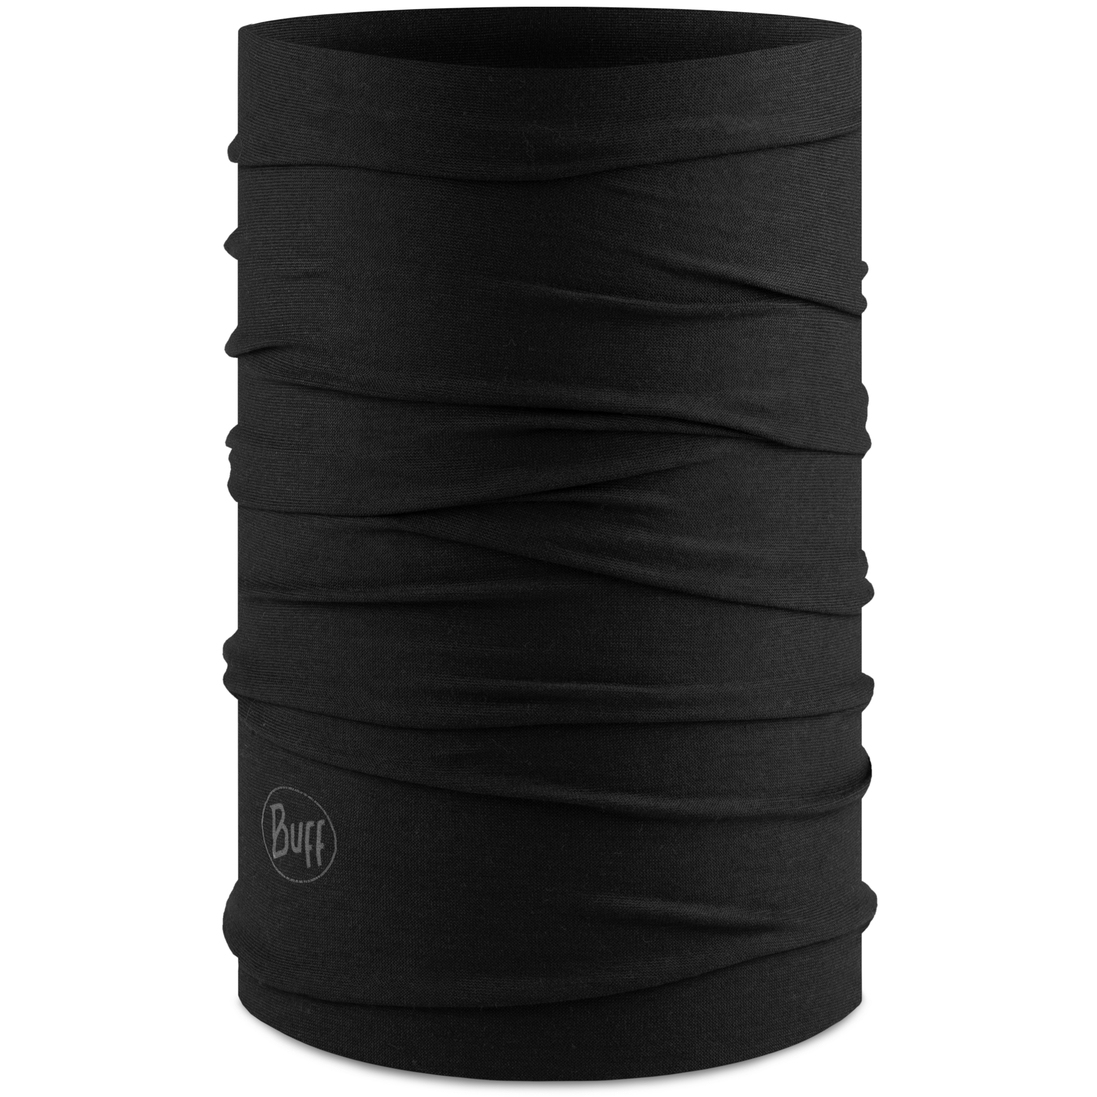 Produktbild von Buff® Original EcoStretch Multifunktionstuch - Solid Black